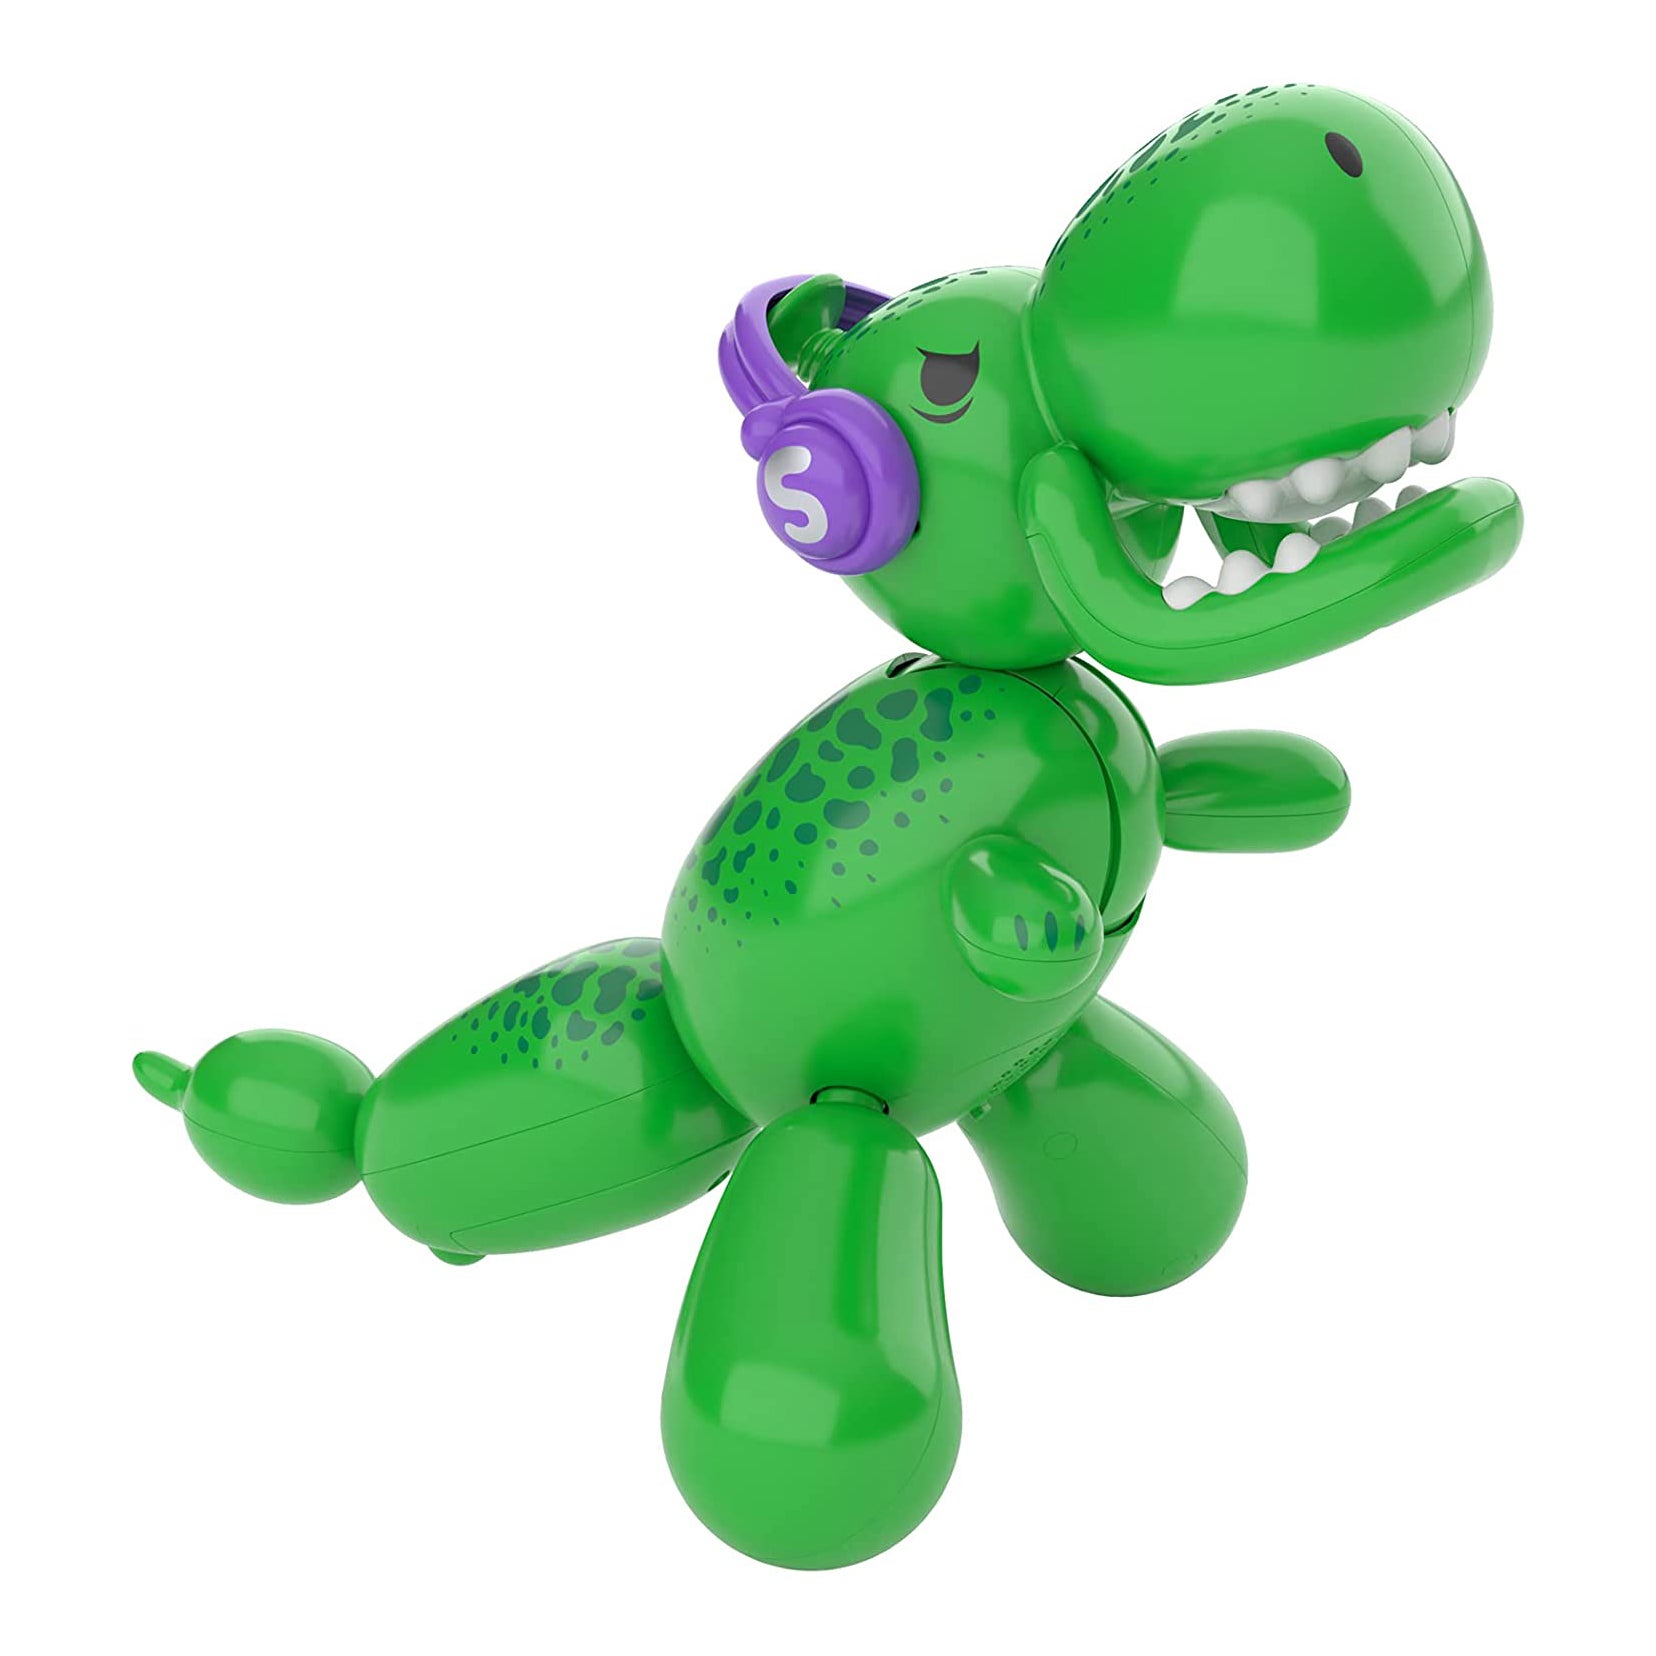 Squeakee The Balloon Dino Interactive Dinosaur Pet Toy